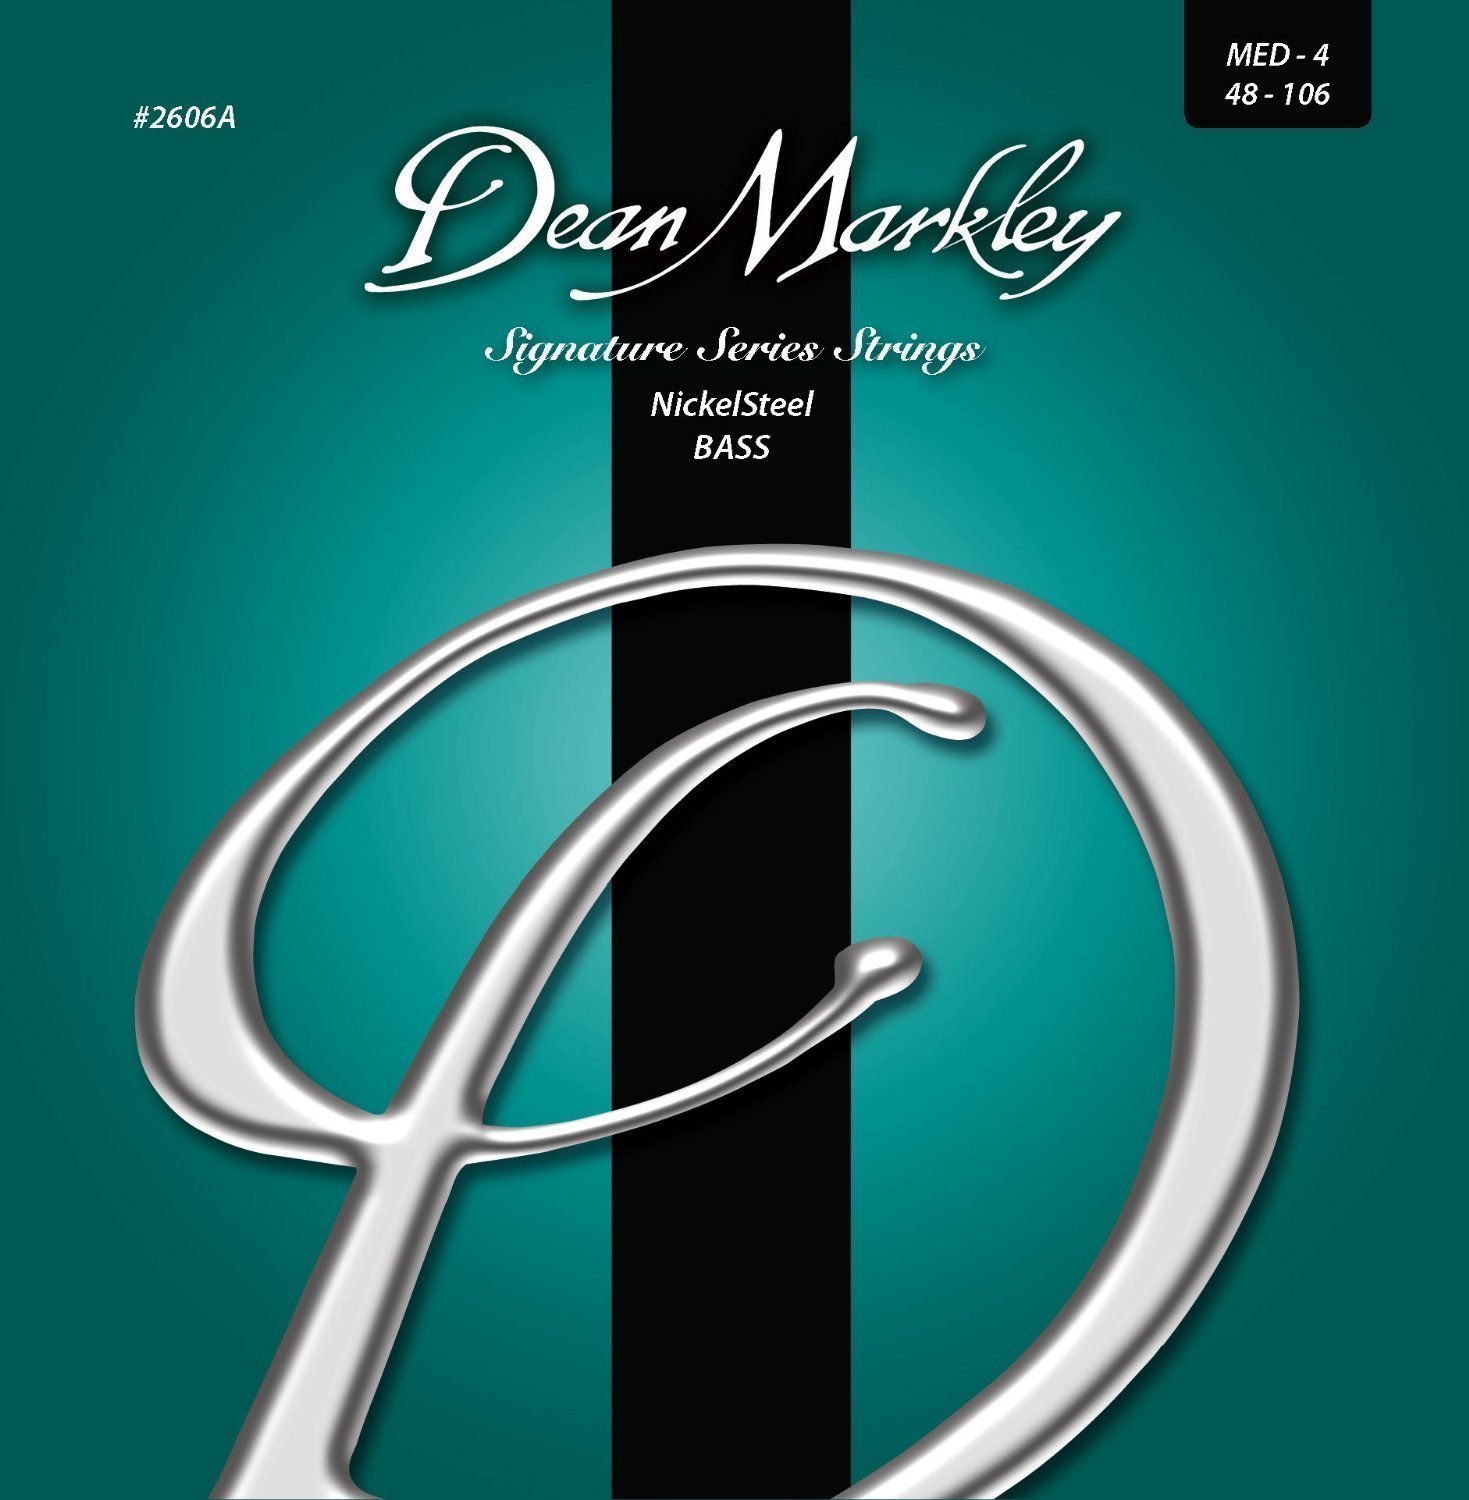 Snaren voor basgitaar Dean Markley 2606A-MED